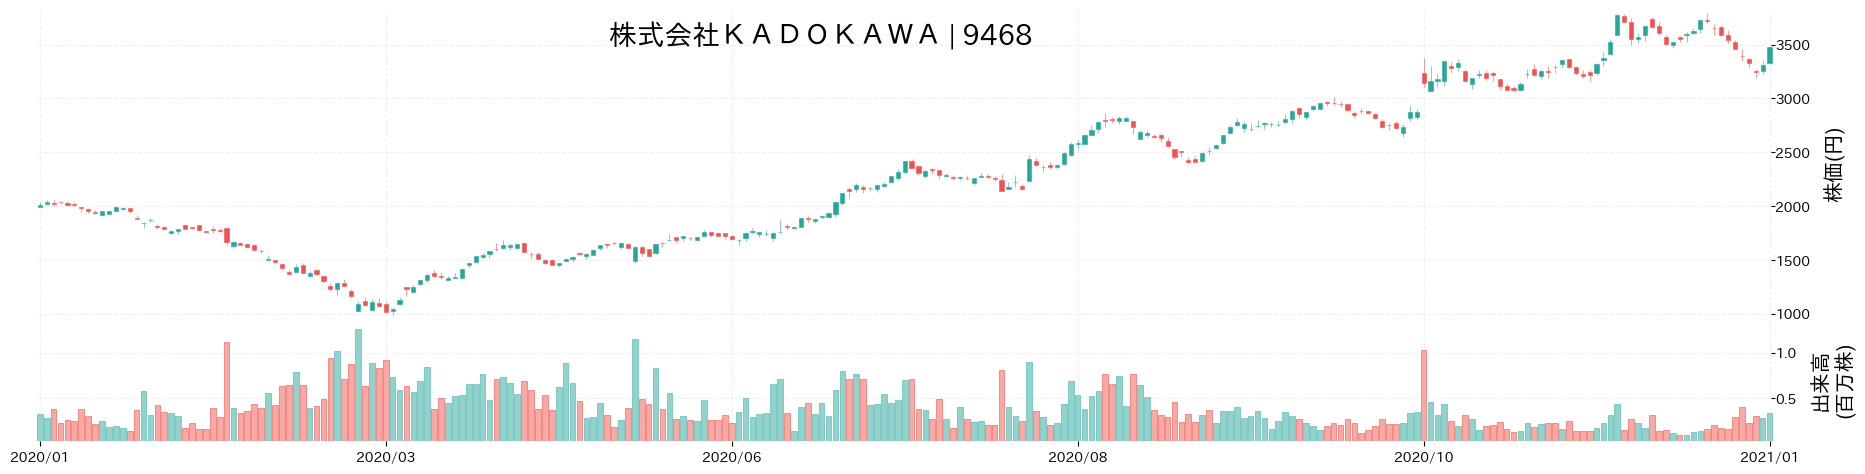 KADOKAWAの株価推移(2020)